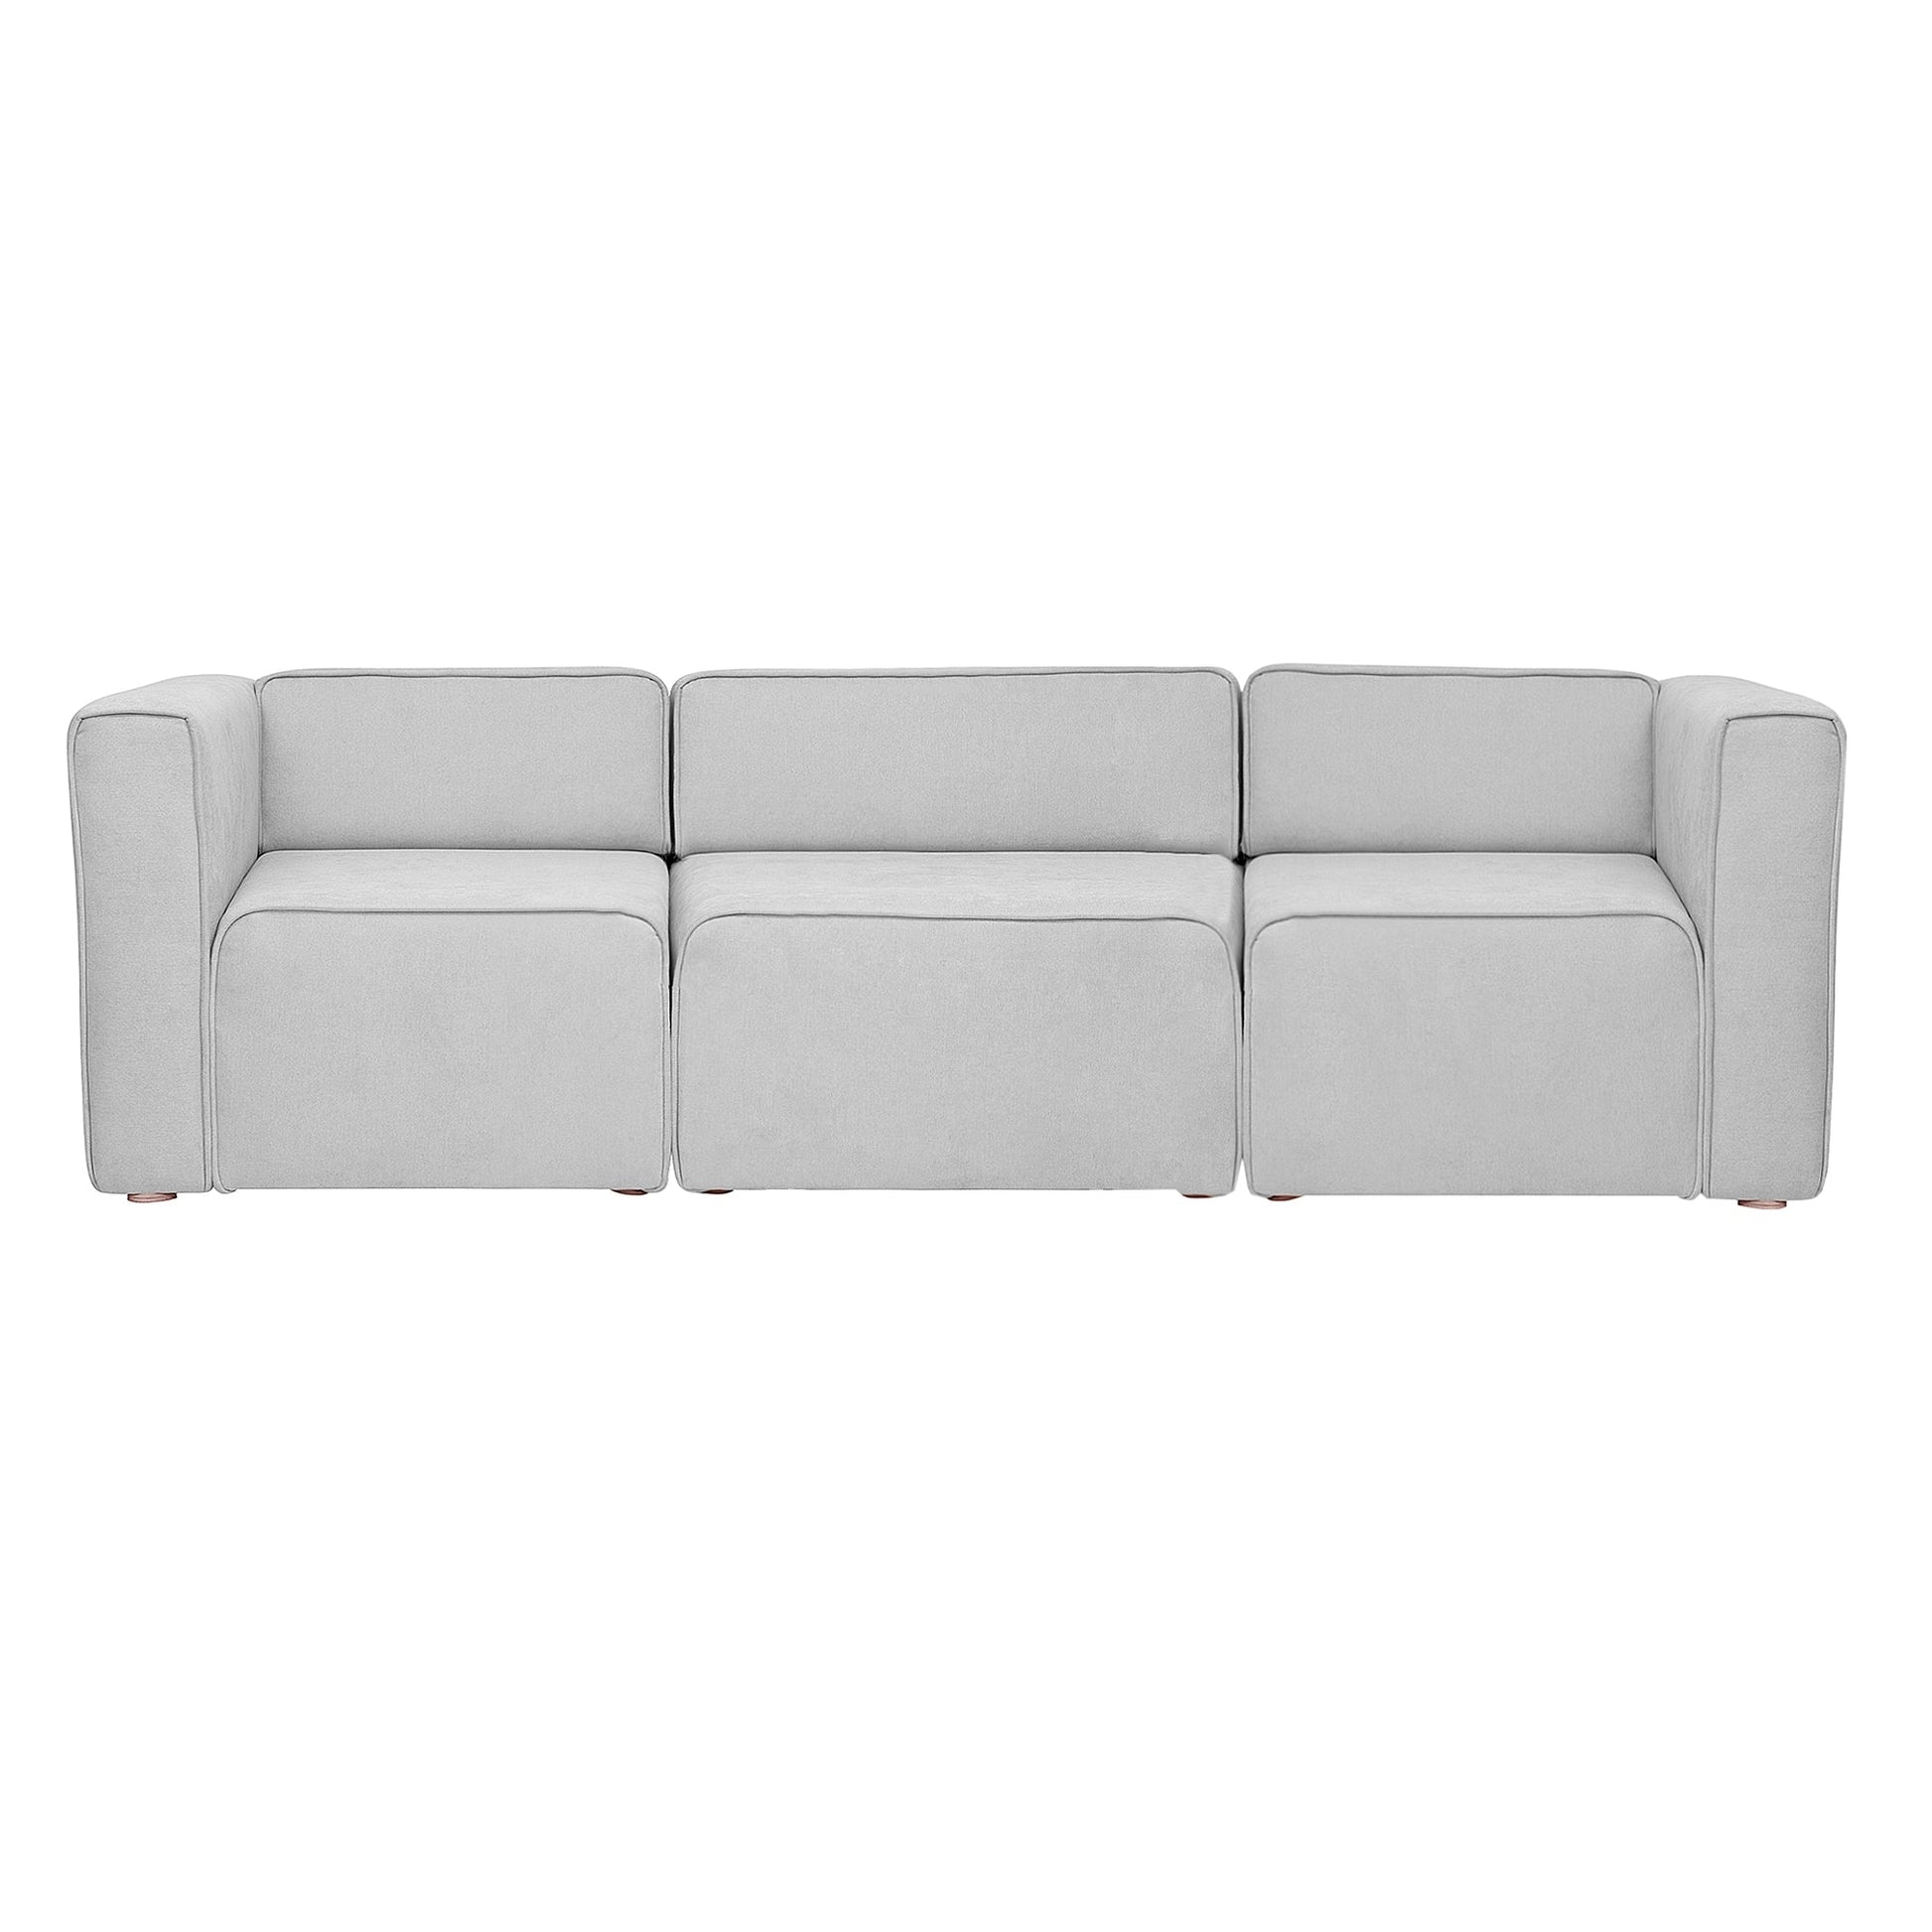 Sofa 3 Cuerpos Dijon - Sofa